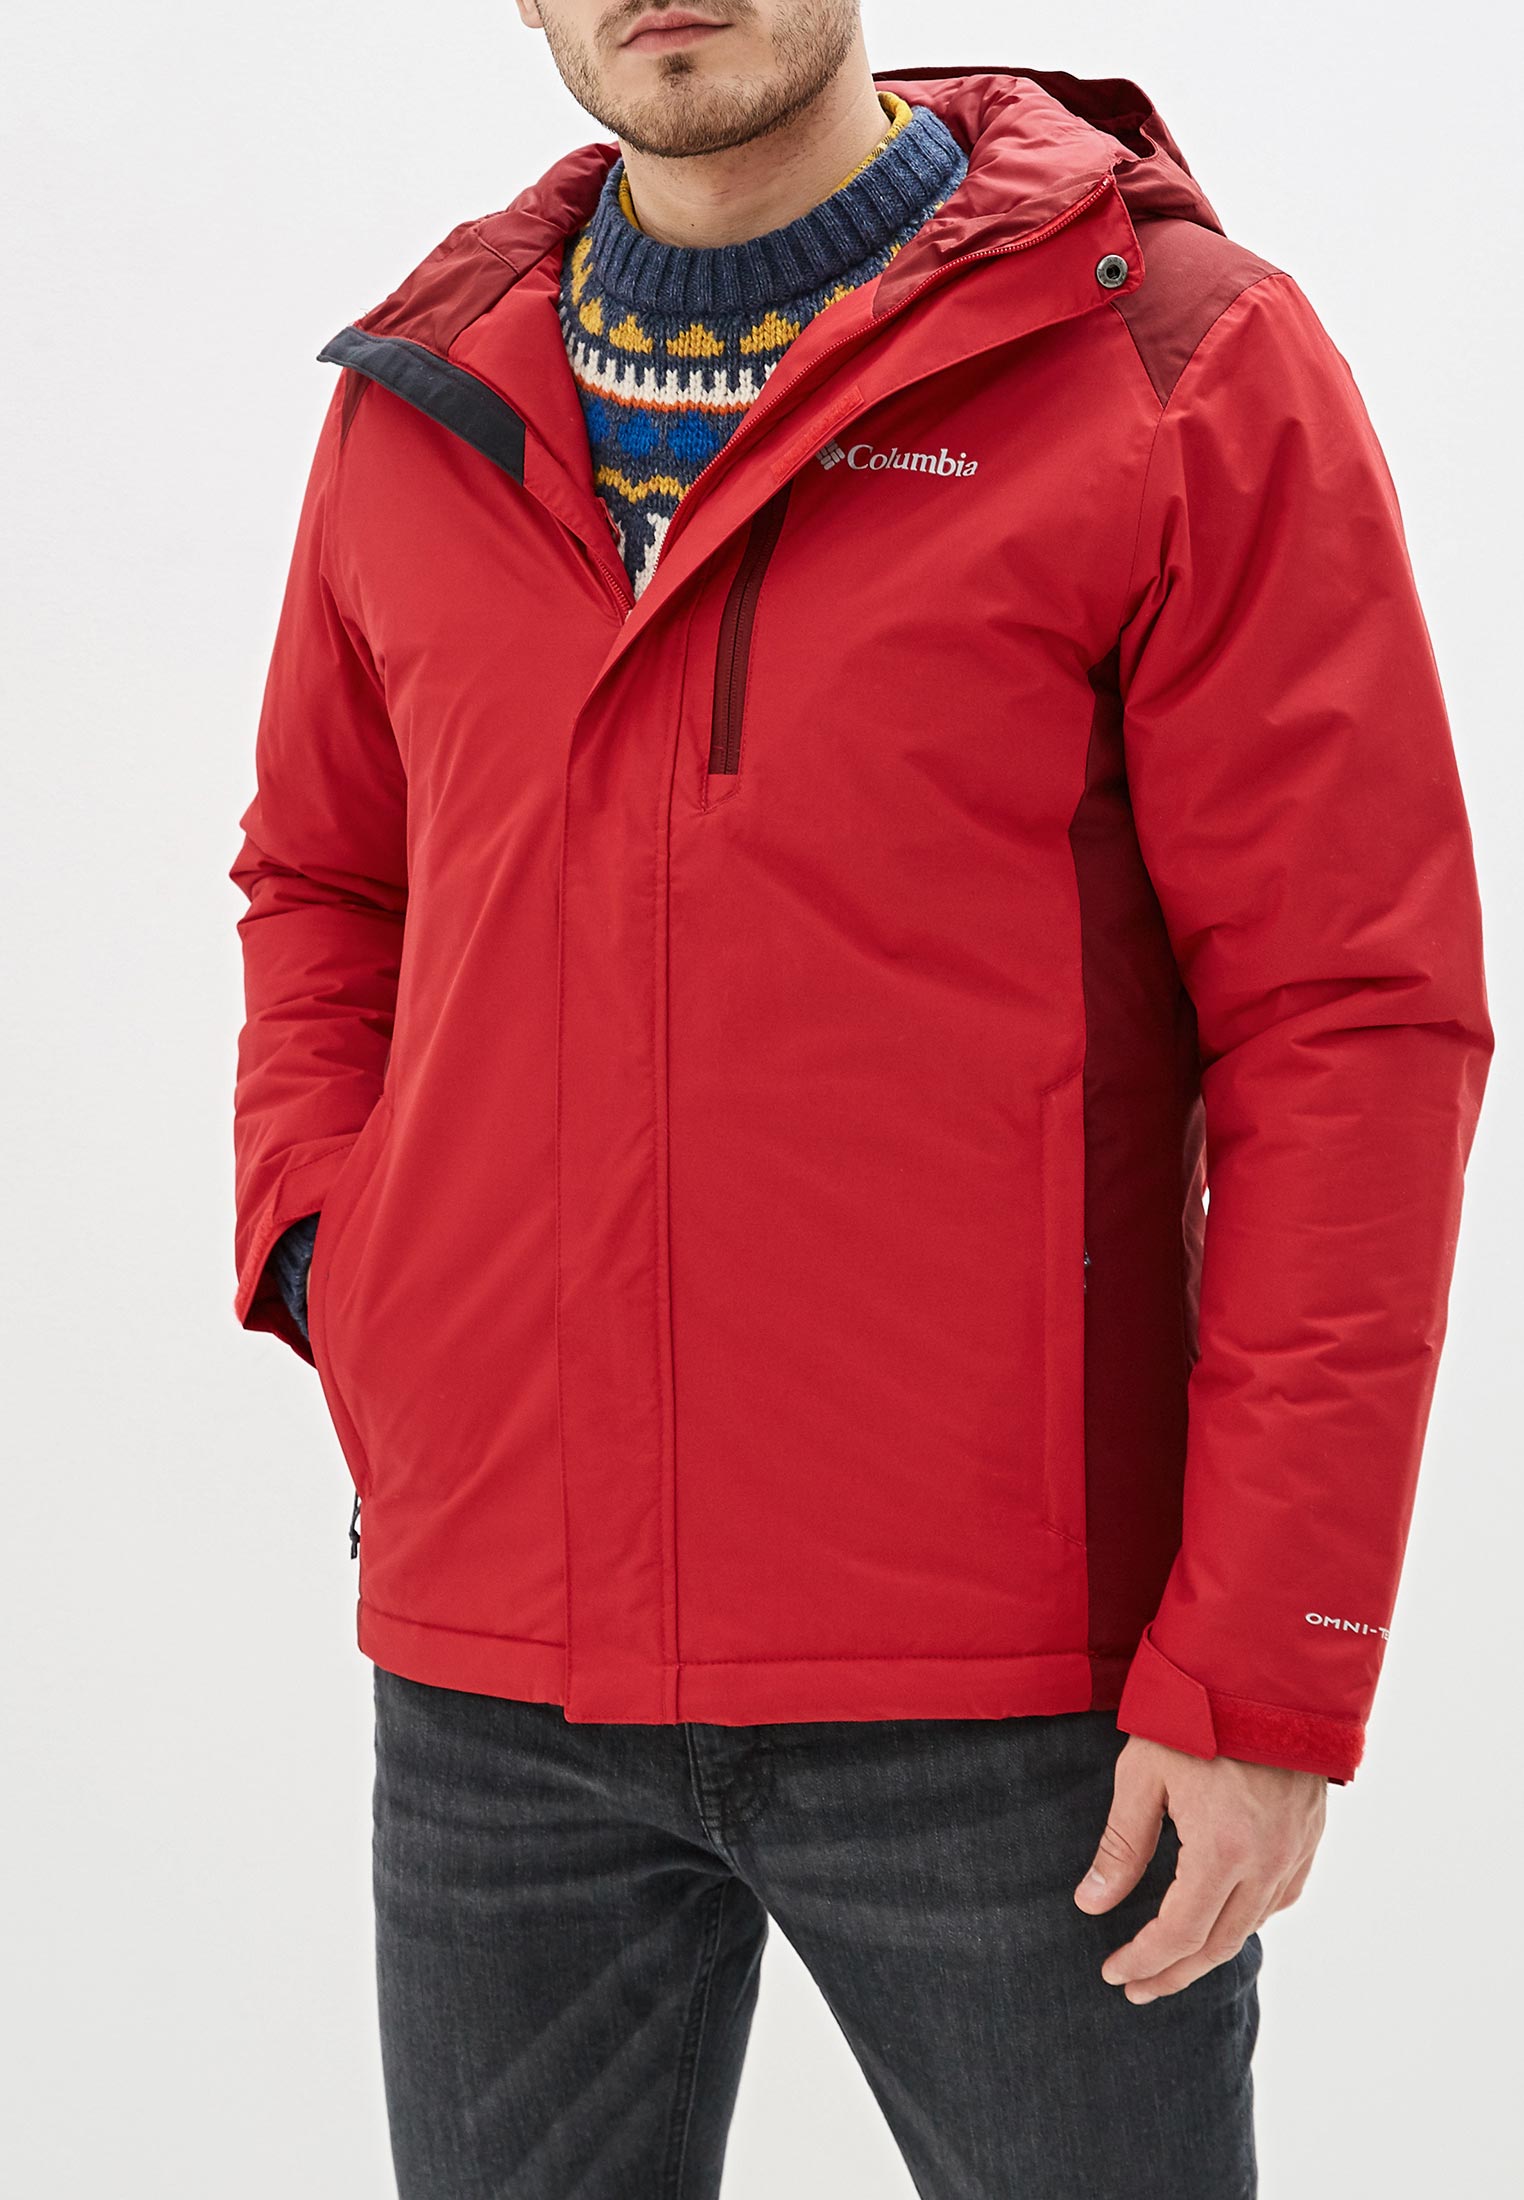 Мужские куртки red. Куртка Columbia мужская красная. Columbia Tipton Peak™ II куртка мужская. Куртка коламбия мужская зимняя красная. Пуховик красный Columbia Columbia мужской.